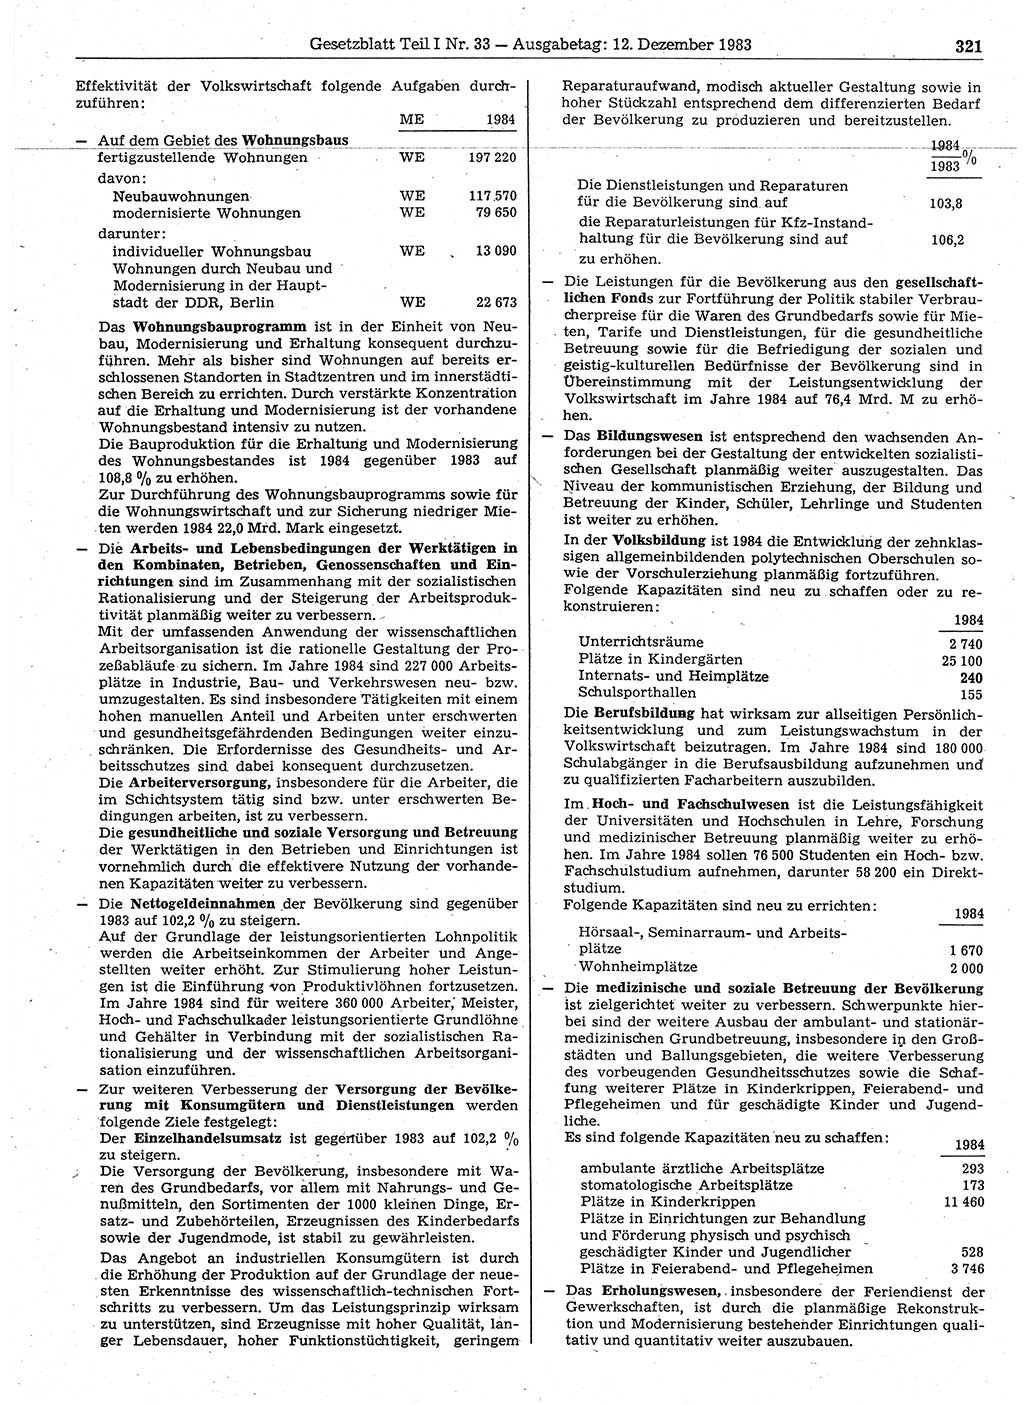 Gesetzblatt (GBl.) der Deutschen Demokratischen Republik (DDR) Teil Ⅰ 1983, Seite 321 (GBl. DDR Ⅰ 1983, S. 321)